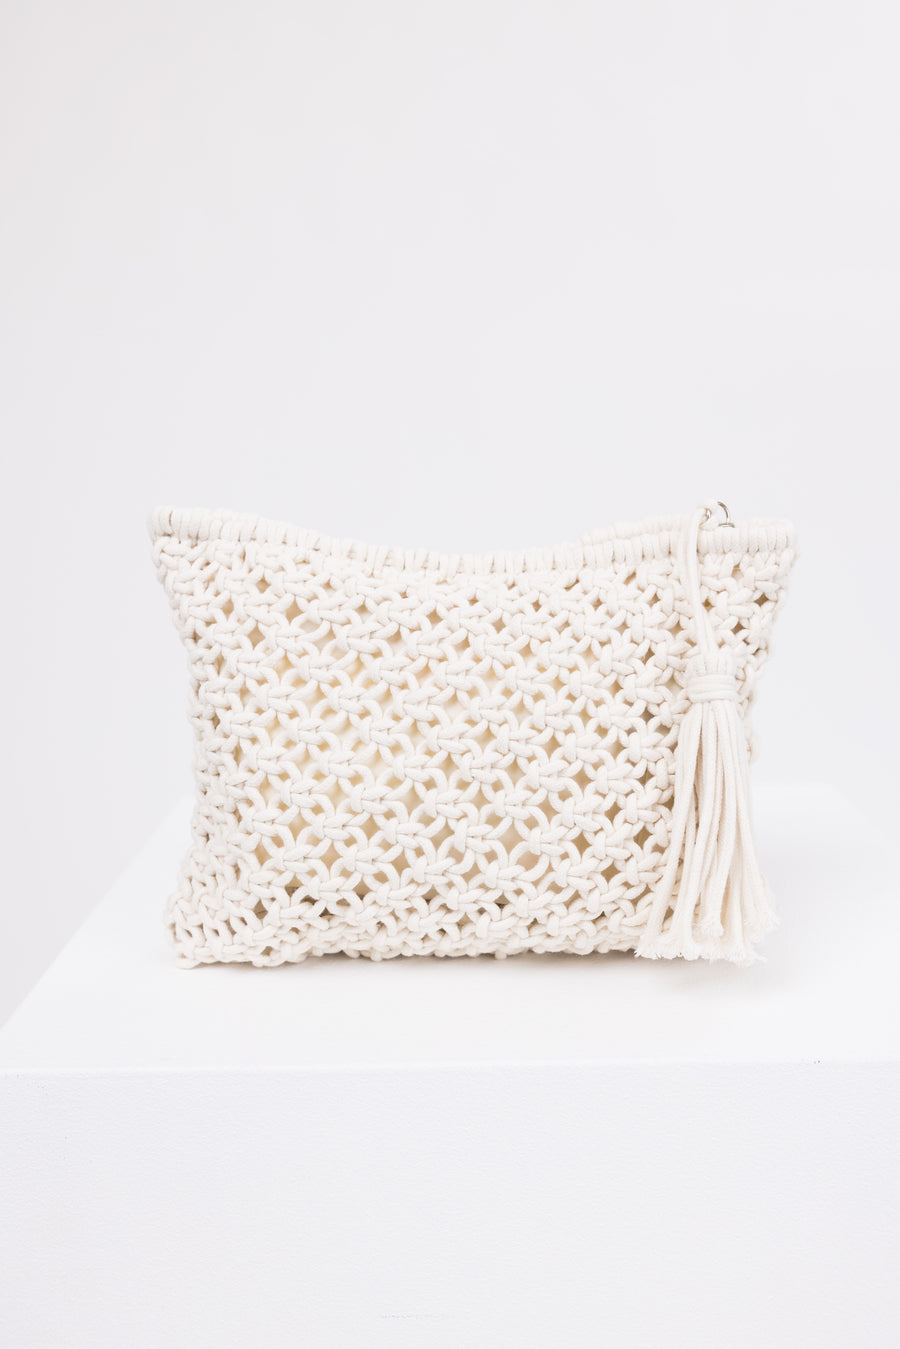 Ivory Crochet Clutch Tassel Purse